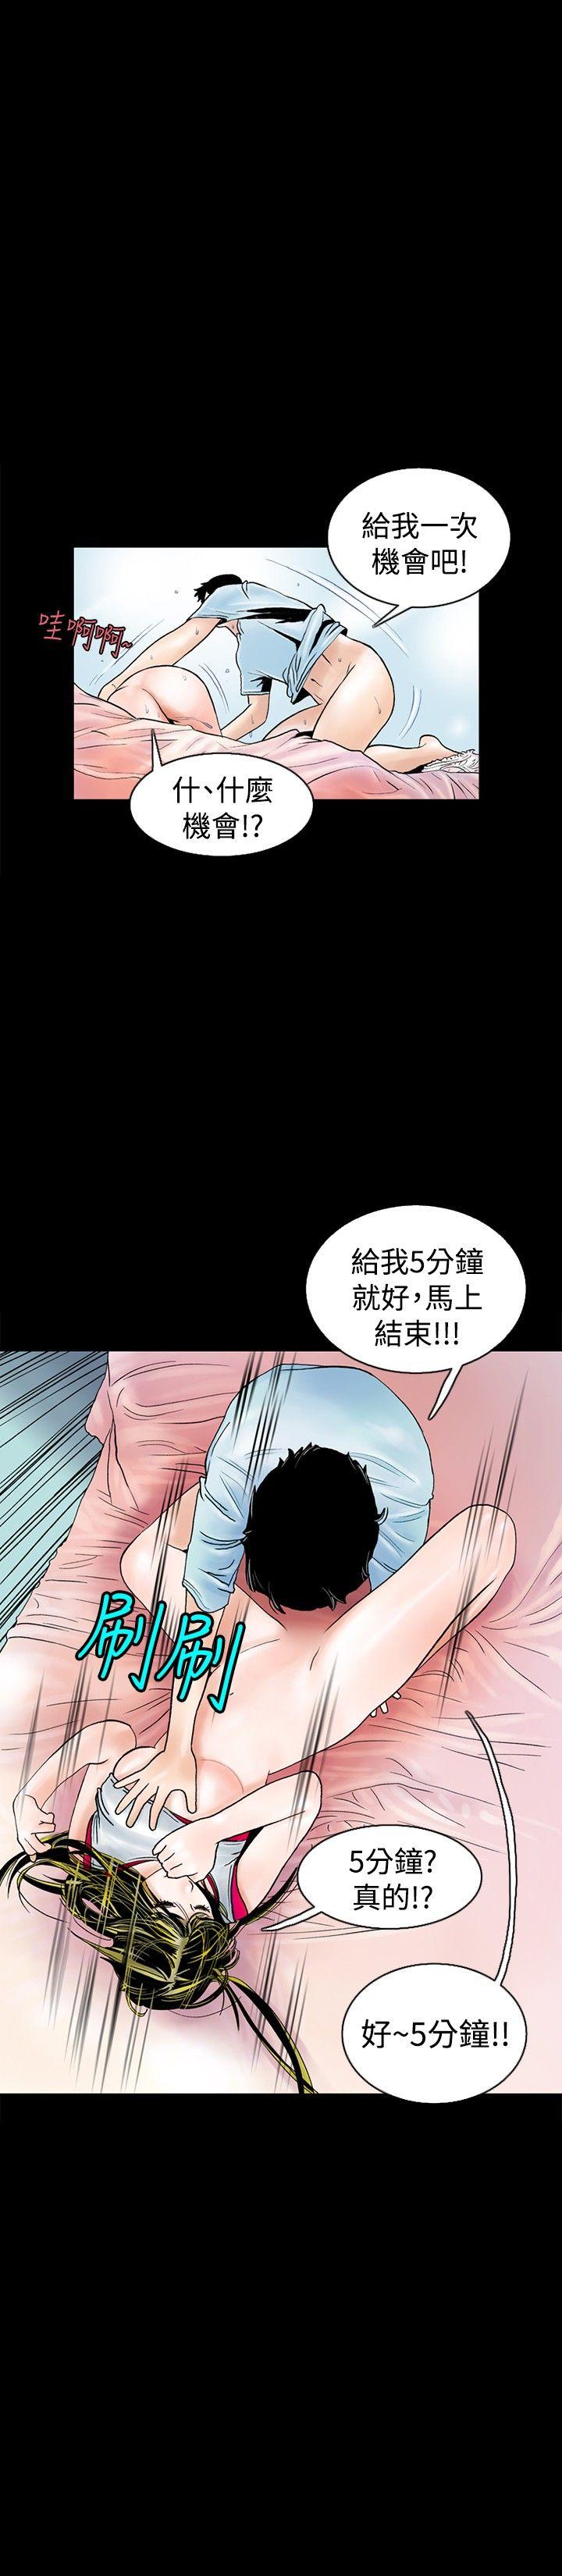 韩国污漫画 秘密Story 背着女友家人偷偷来(下) 11